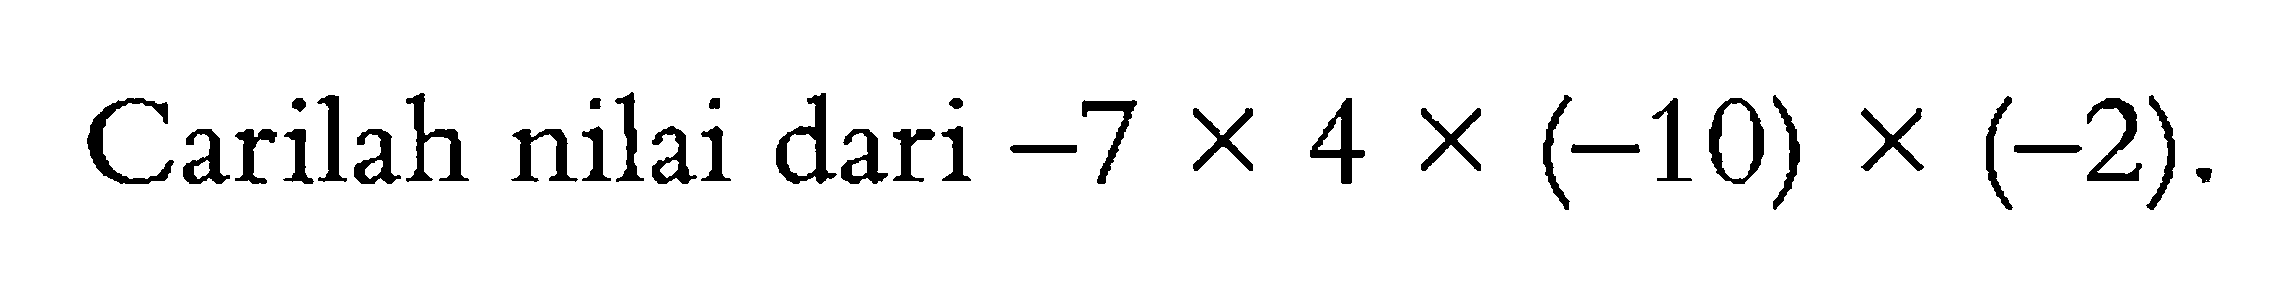 Carilah nilai dari -7 x 4 x (-10) x (-2).